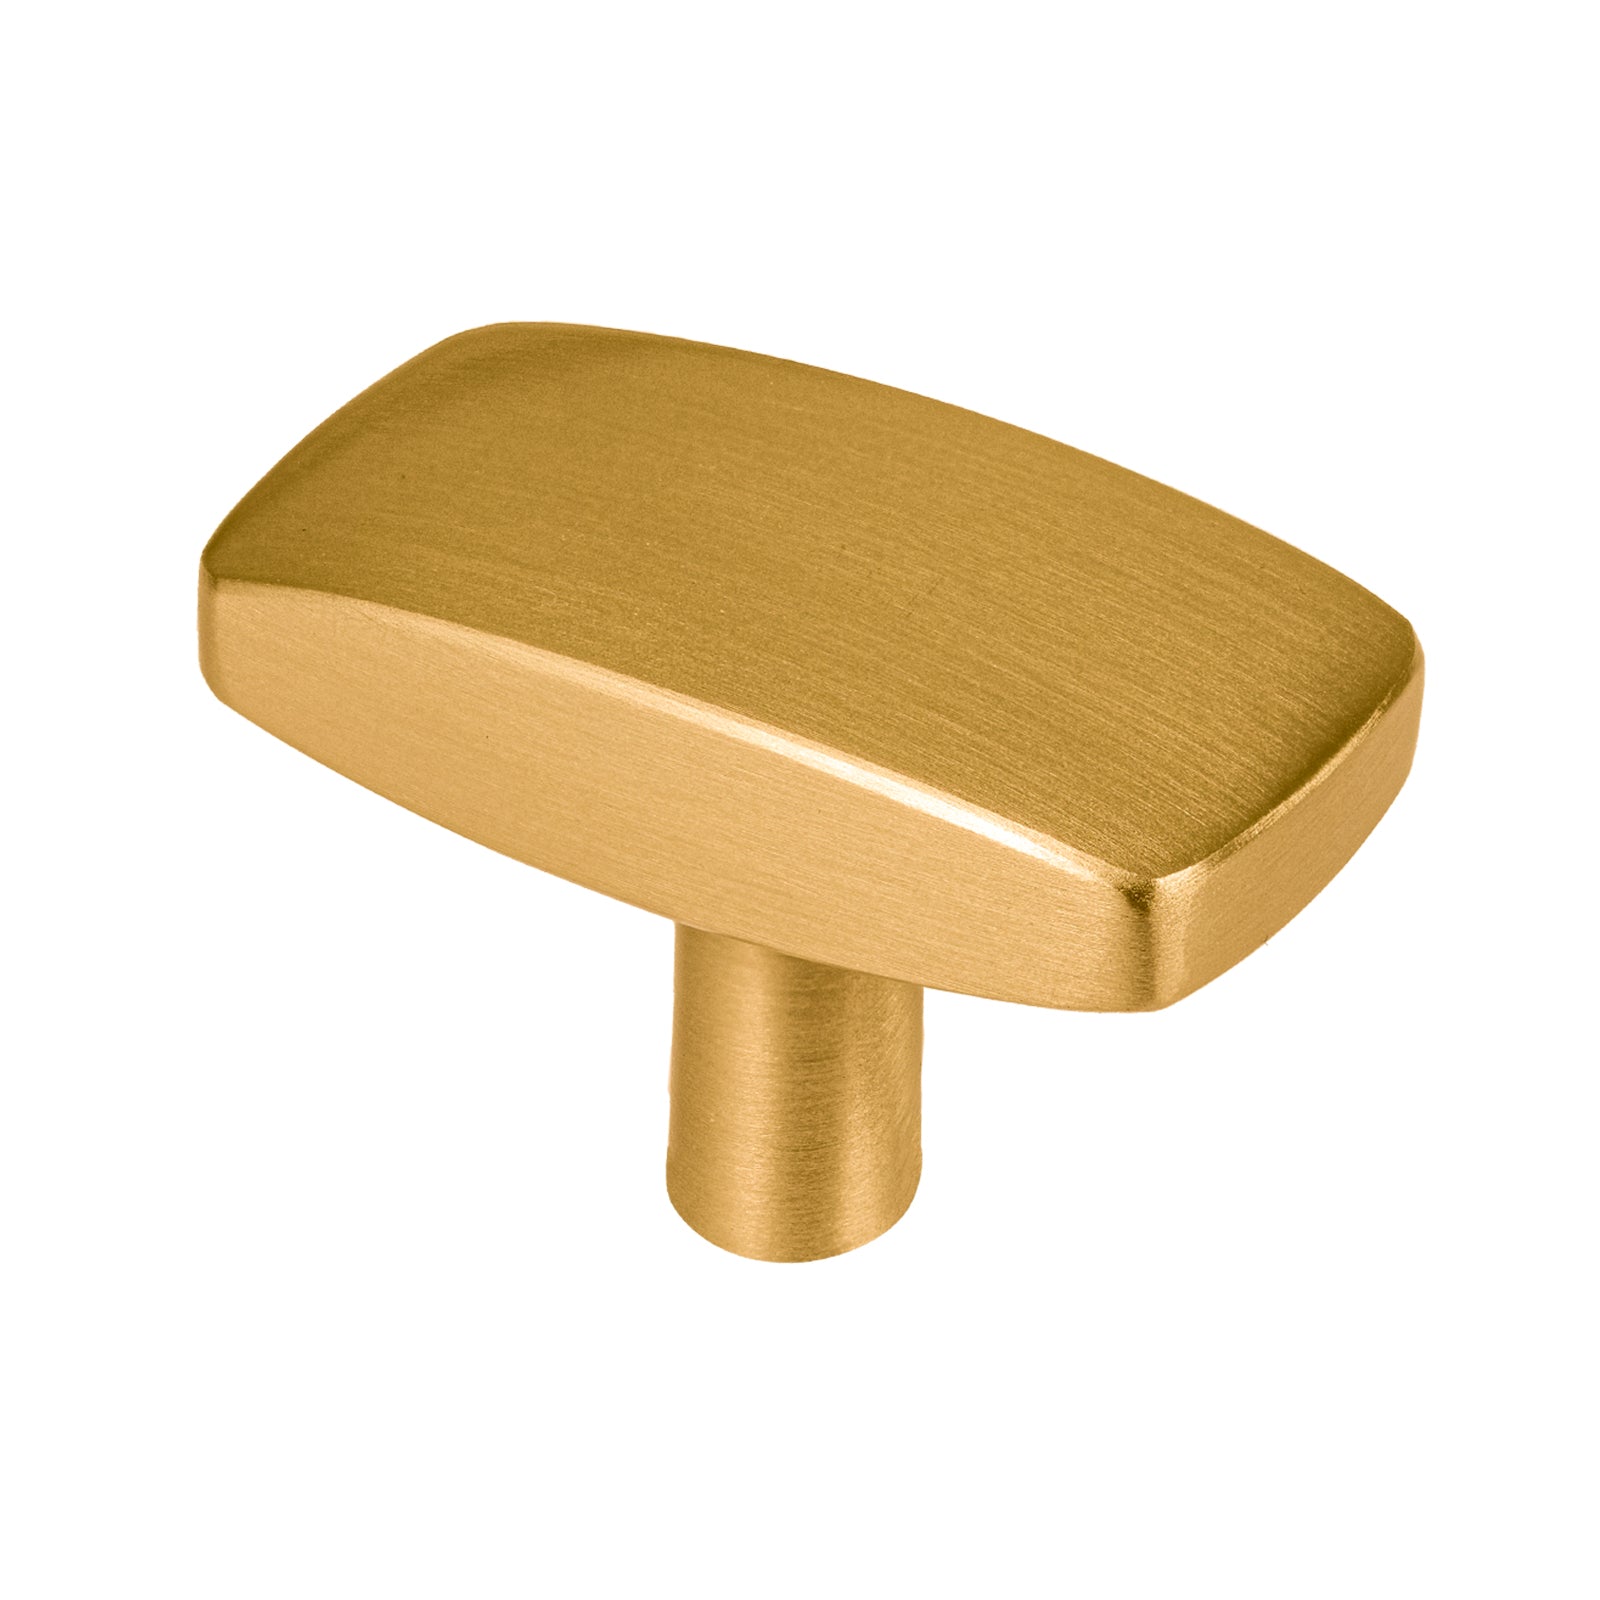 satin brass large rectangular knob, kitchen hardware 